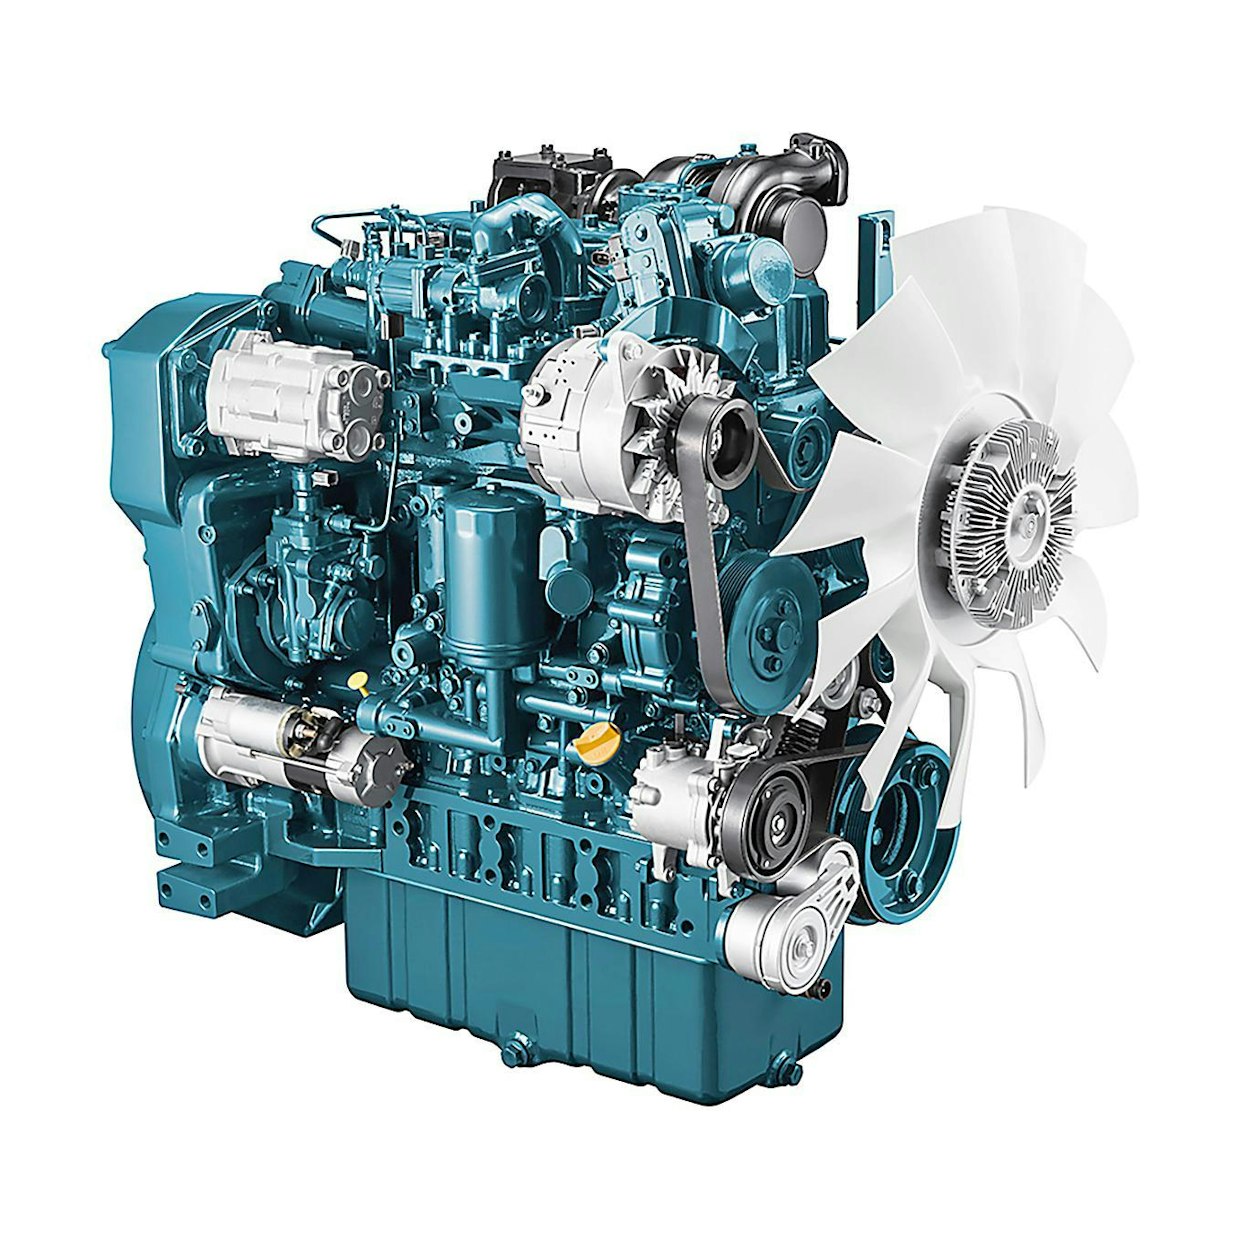 V 5009 moottori sai Baumassa Vuoden Dieselmoottori -palkinnon. Kubota 5009 on nelisylinterinen moottori, jonka iskutilavuus on 5 litraa. Moottorin suurin teho on 211 hv ja se täyttää päästötaso 5 -määräykset. Kubota 5009 on suurin koskaan valmistettu Kubota-diesel. Se on tarkoitettu kaivureiden ja kuormainten sekä generaattoreiden voimanlähteeksi.